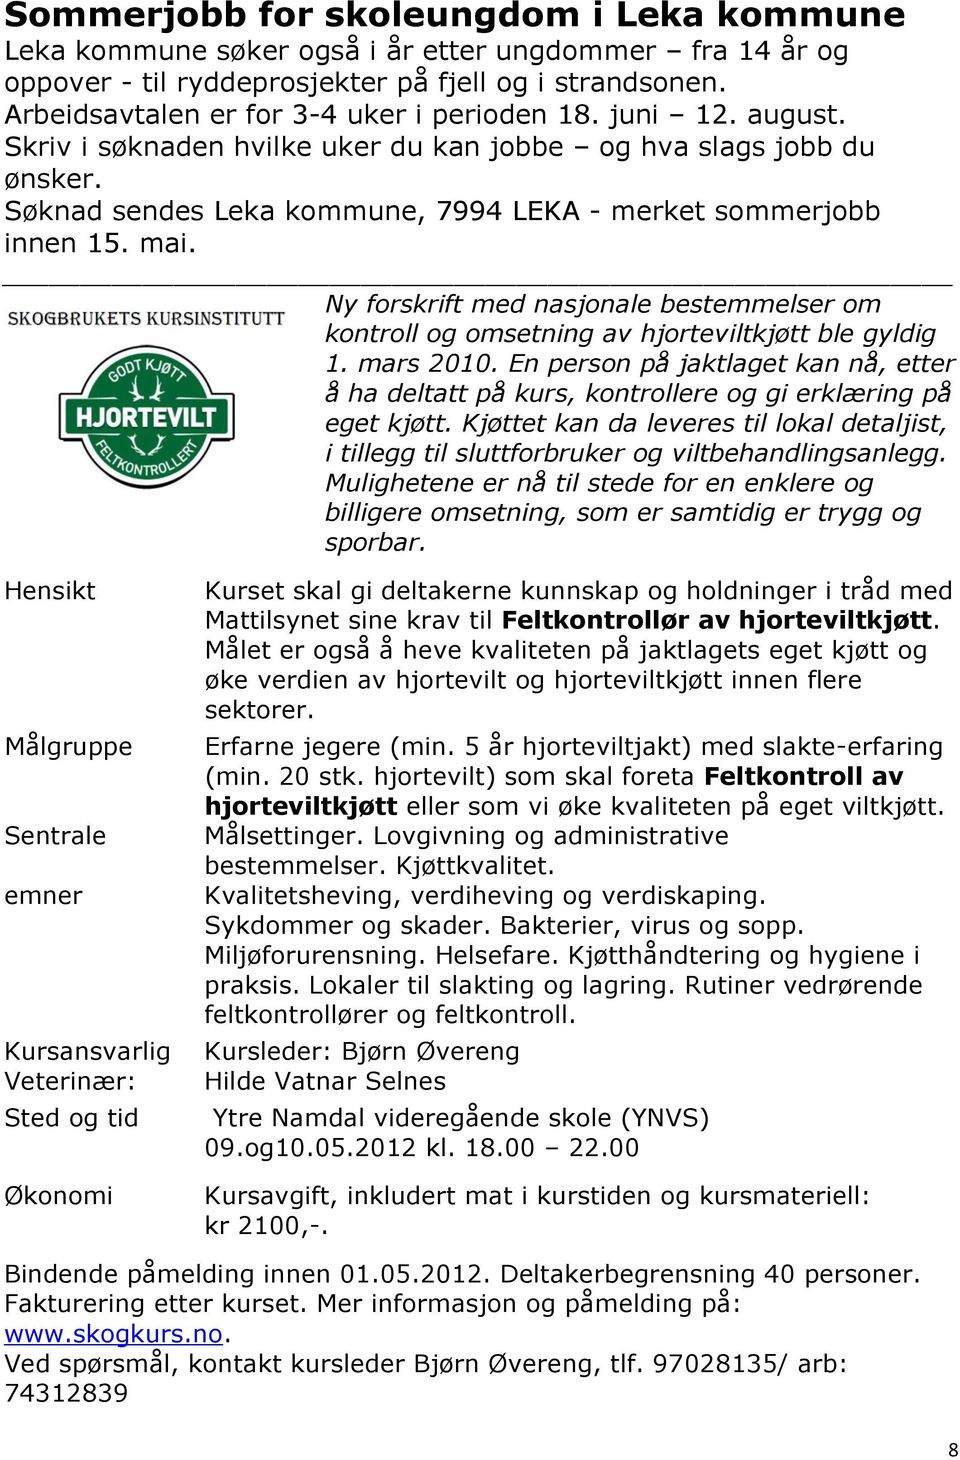 Søknad sendes Leka kommune, 7994 LEKA - merket sommerjobb innen 15. mai. Ny forskrift med nasjonale bestemmelser om kontroll og omsetning av hjorteviltkjøtt ble gyldig 1. mars 2010.